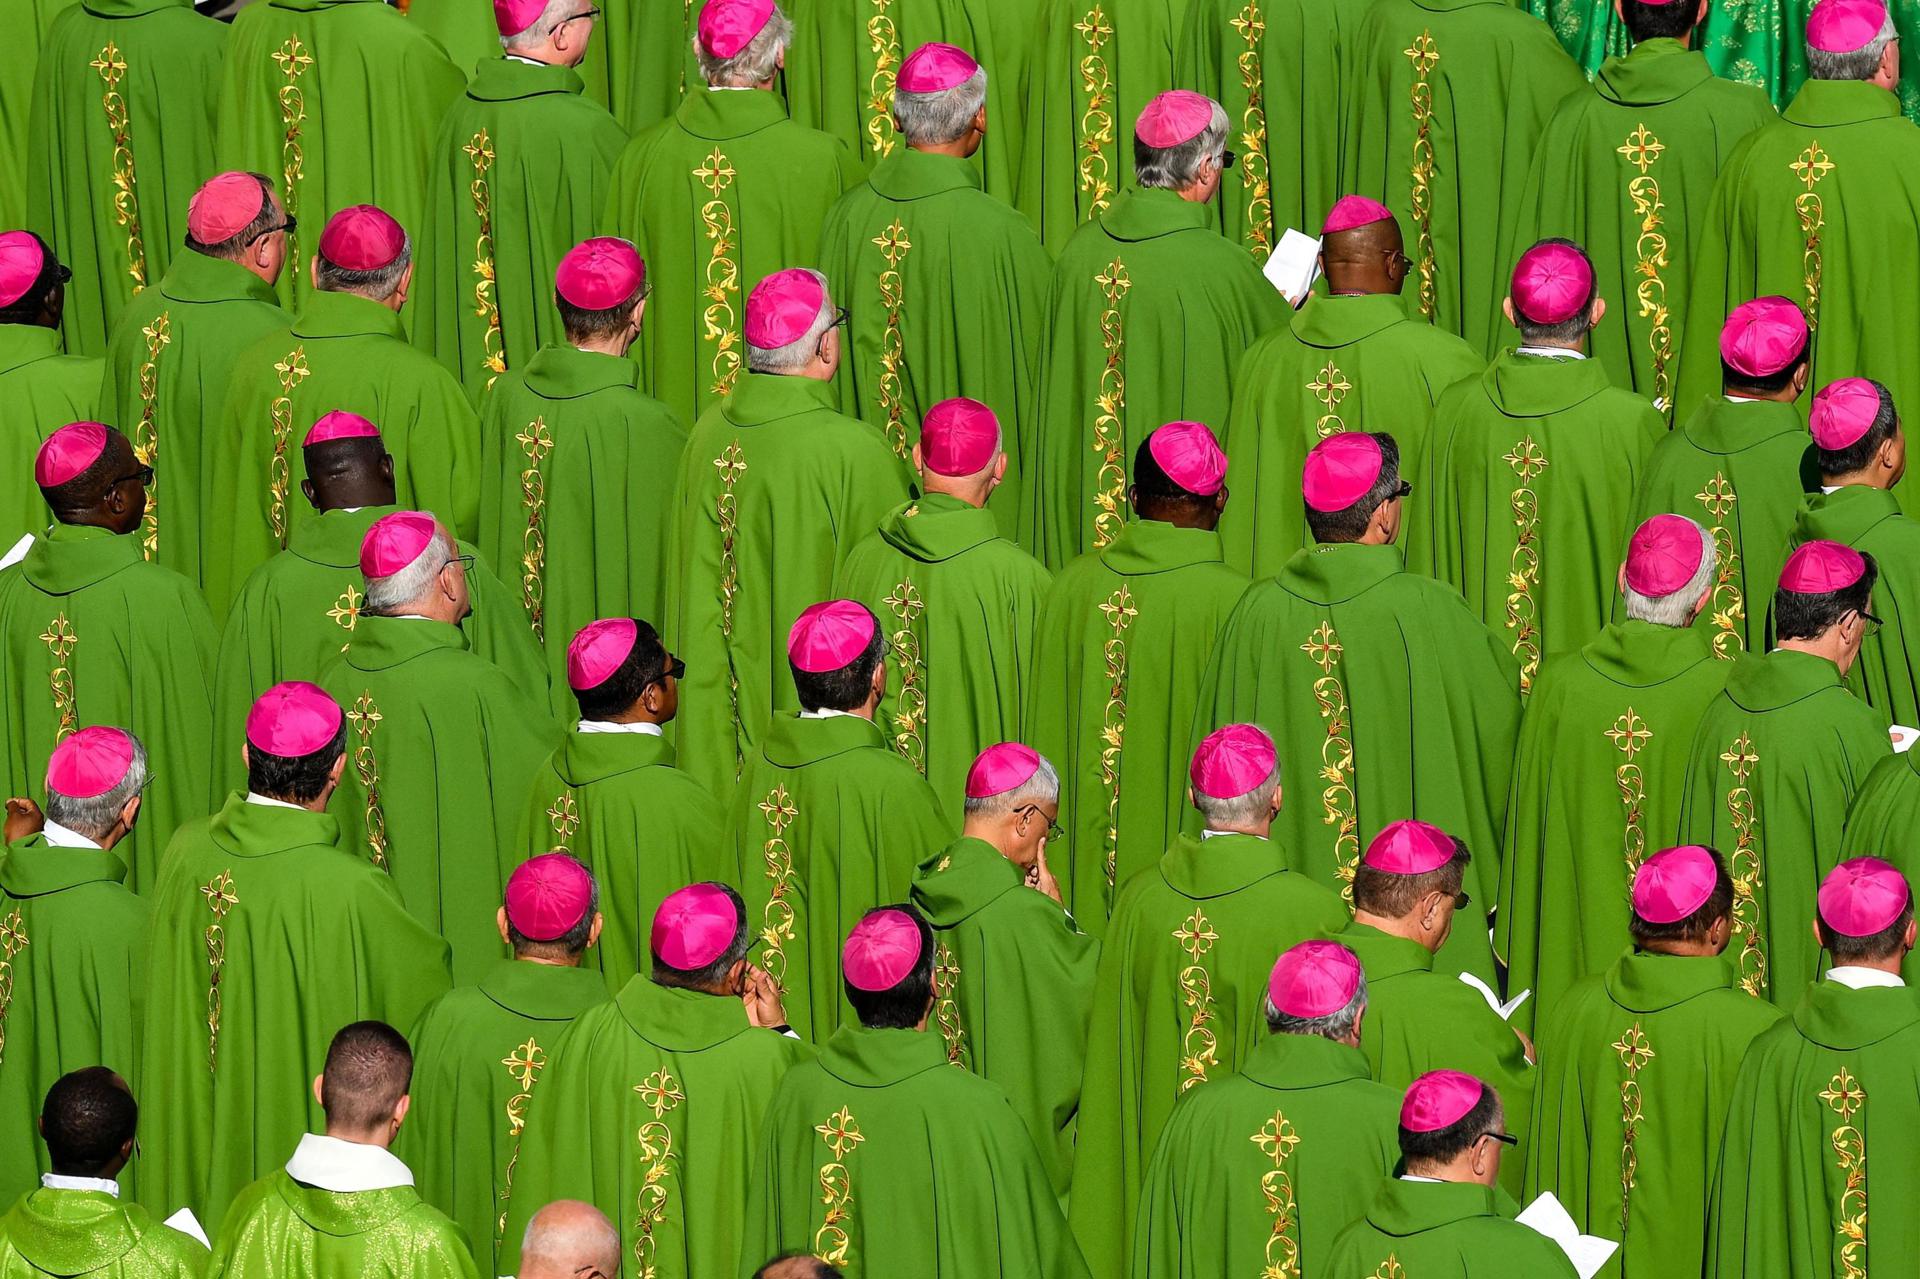 Obispos asisten a la misa de apertura de un Sínodo en la Plaza de San Pedro en 2018. EFE/ Alessandro Di Meo